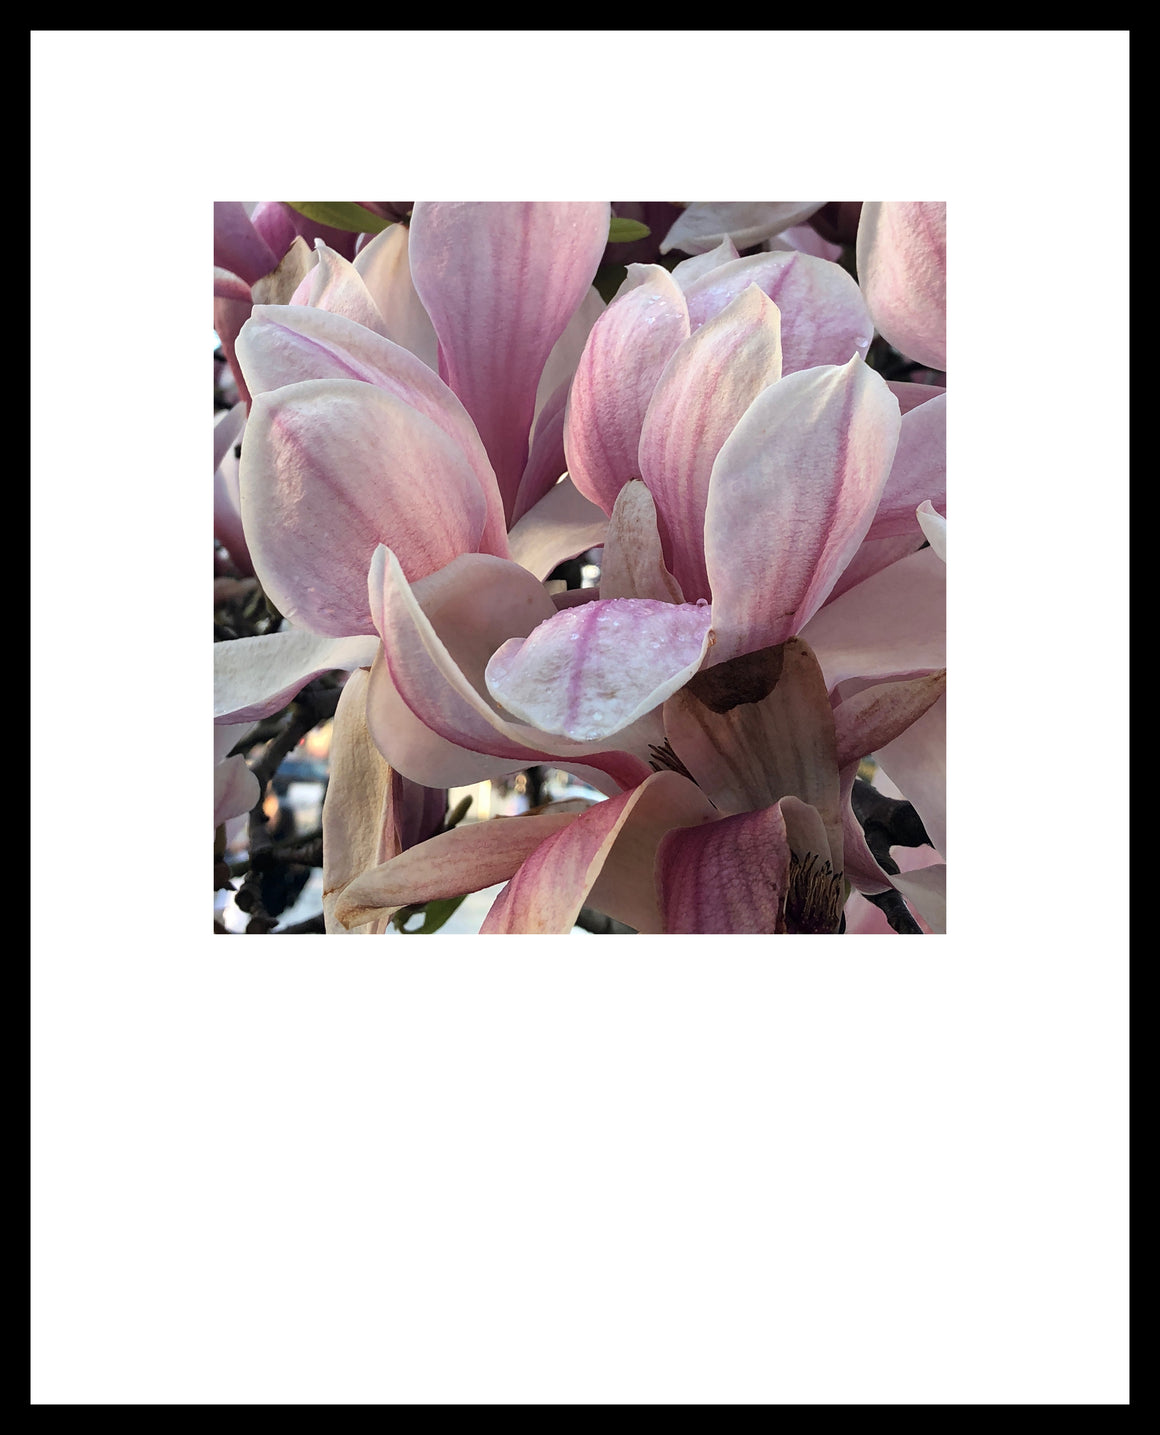 magnolias in paris